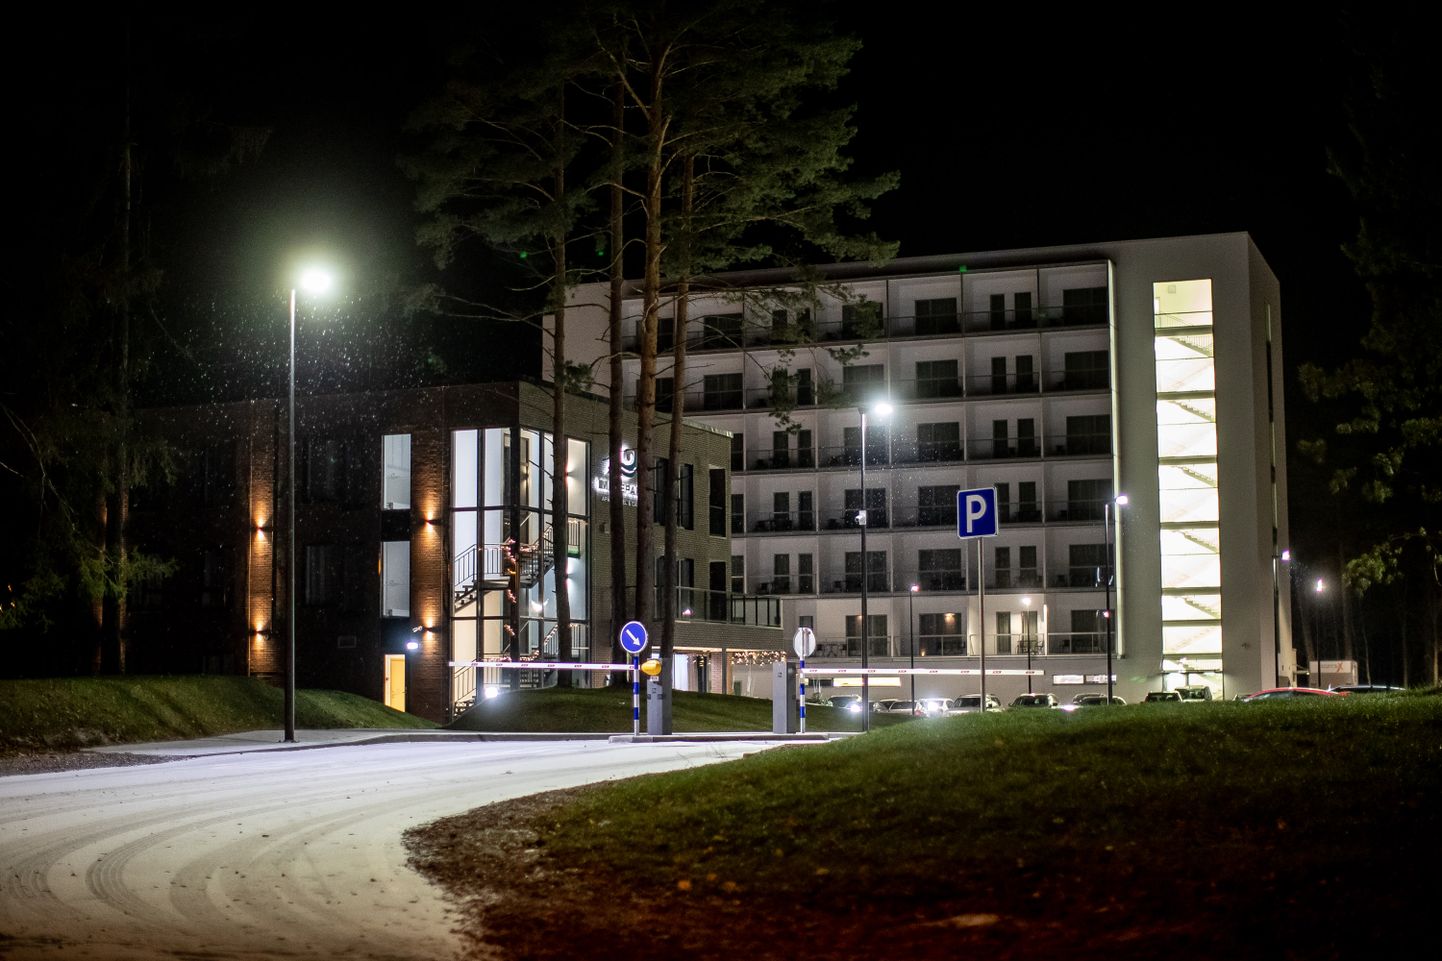 Narva-Jõesuu spaa-hotell koroonakriisi ajal. Pilt on illustratiivne.